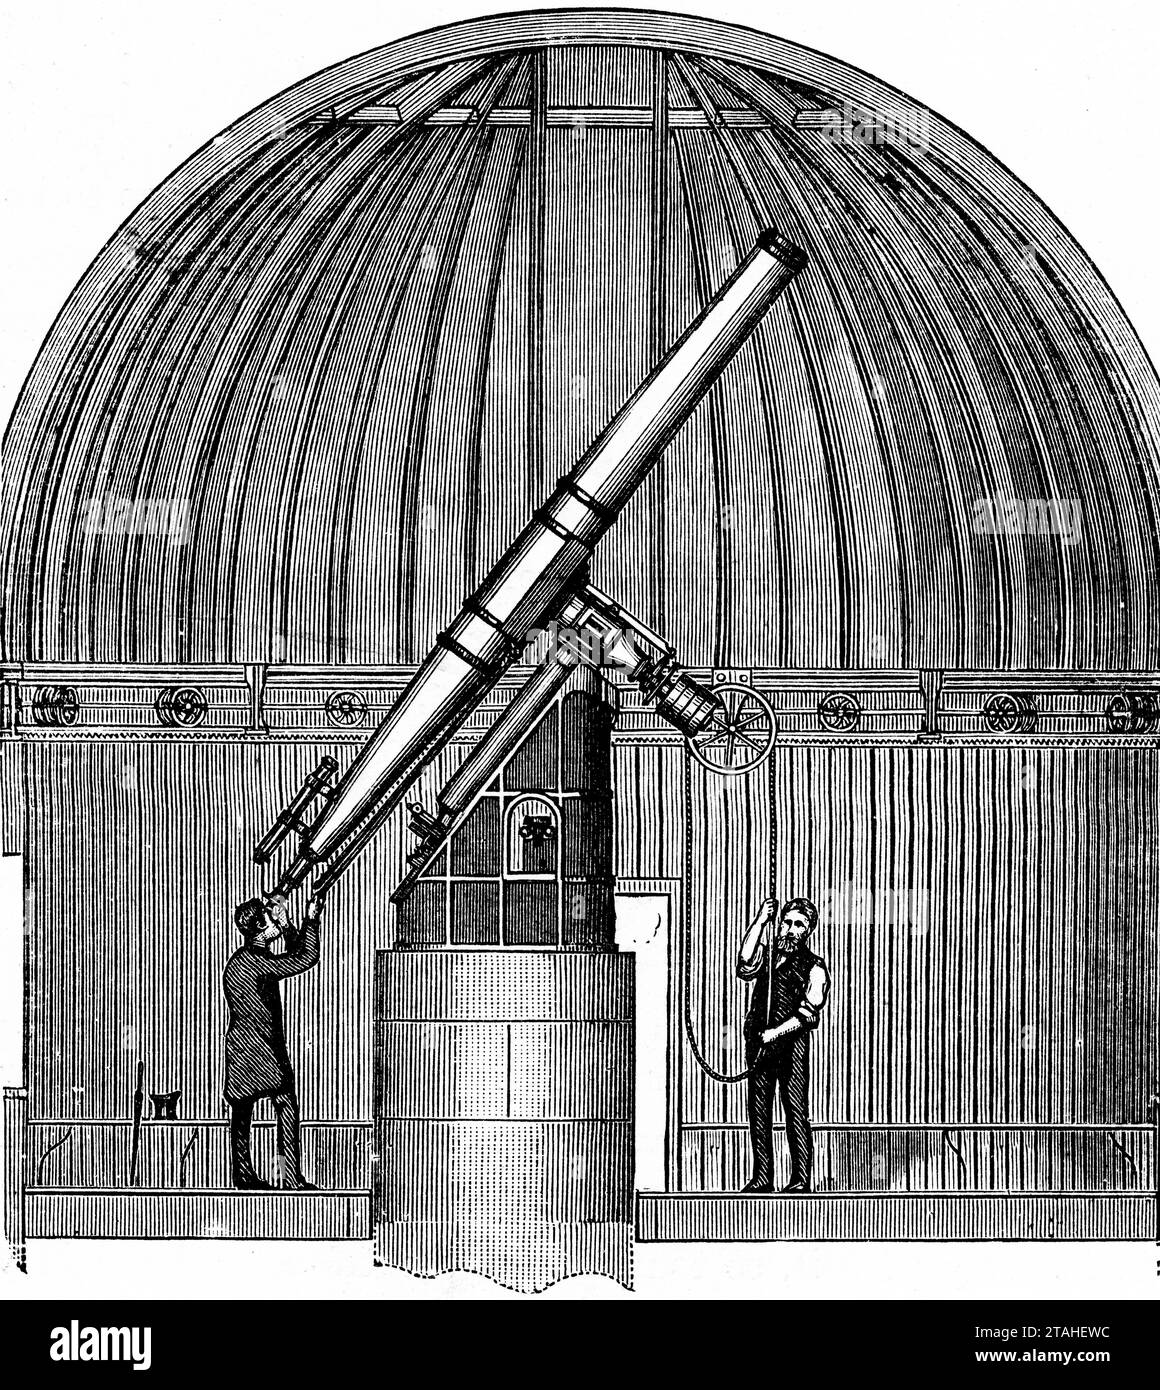 Ein Teil der Kuppel des Dunsink Observatory, Irland, 1889. Eine Ansicht, die den South Dome und das South Telescope zeigt. Das South Telescope, ein 12-Zoll-Grubb-Instrument, ist ein Refraktionsteleskop, das von Thomas Grubb aus Dublin gebaut und 1868 fertiggestellt wurde. Stockfoto